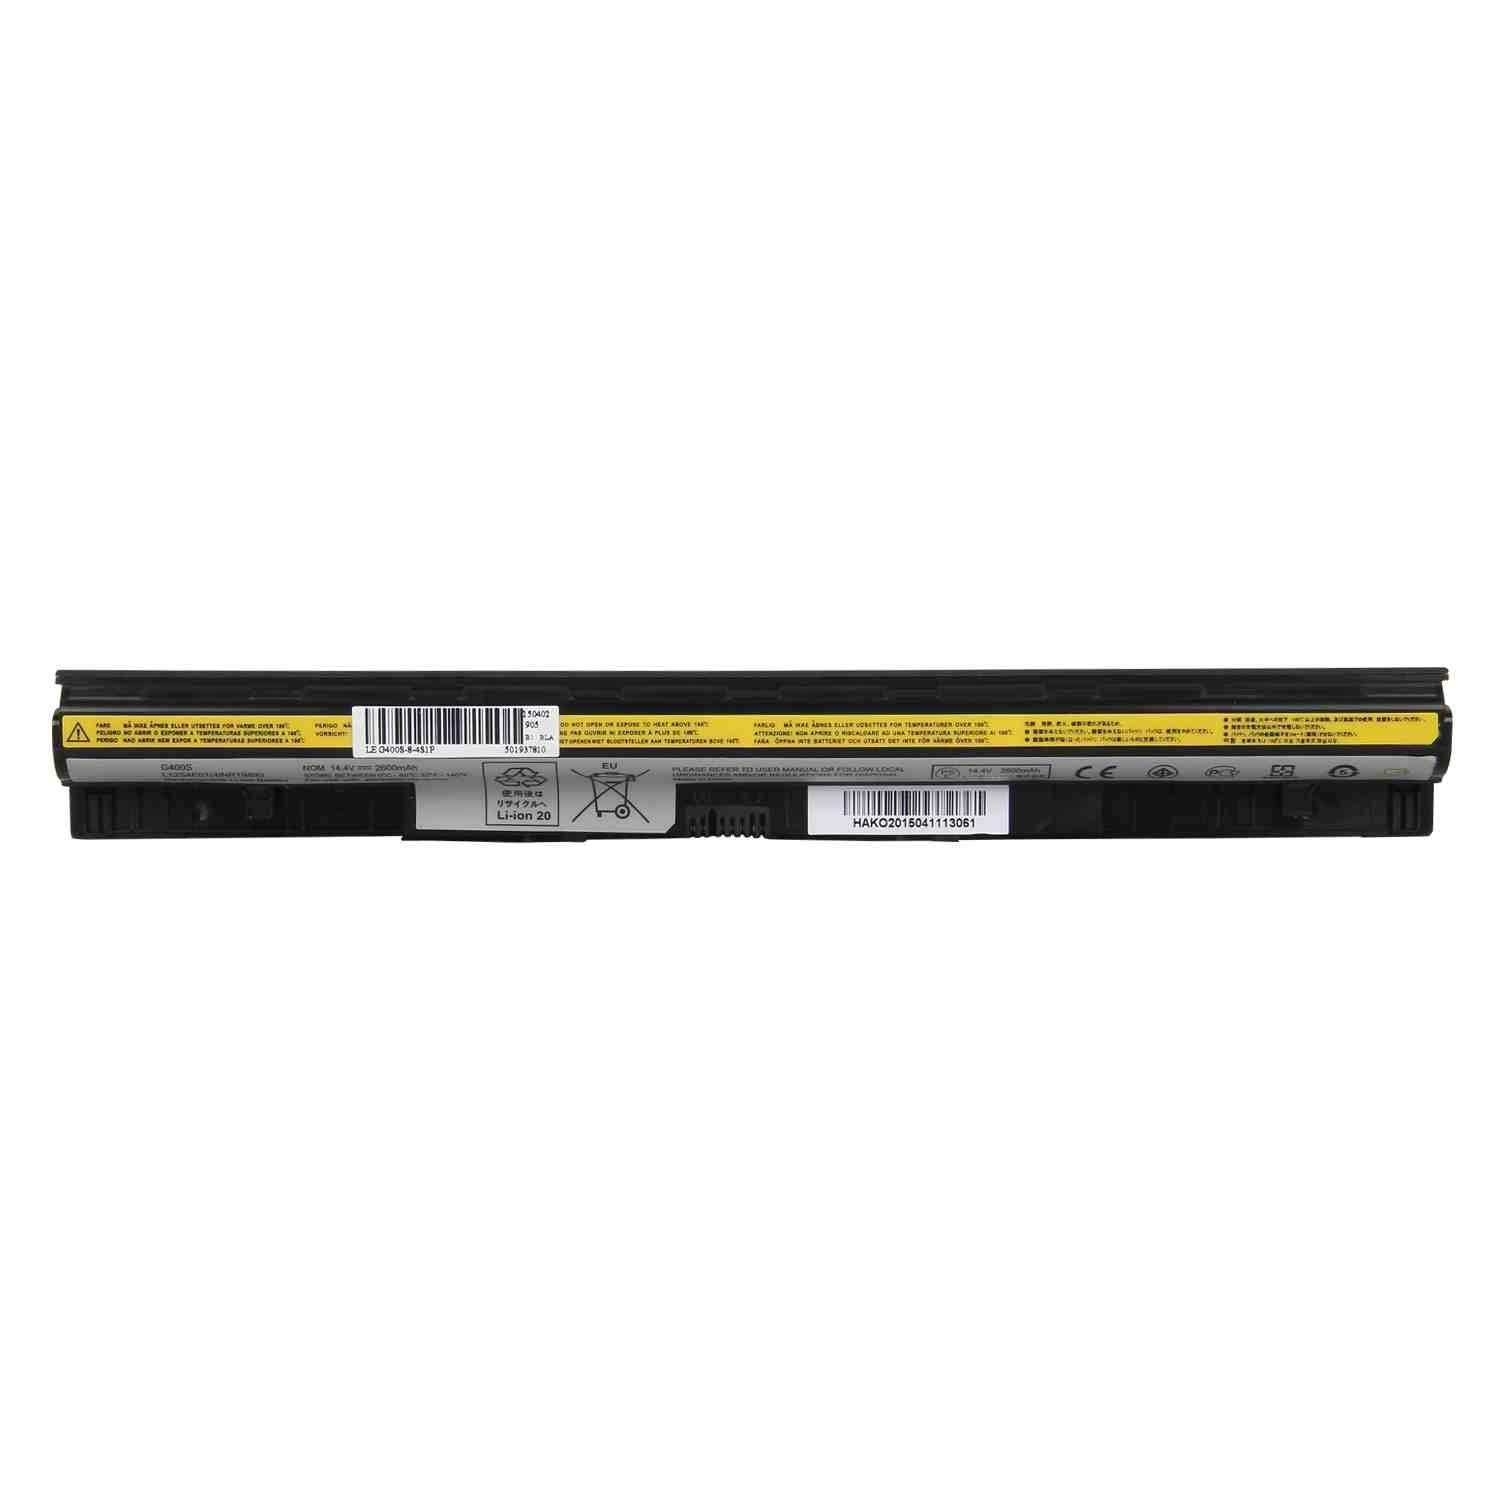 LAPLIFE Laptop Battery for Lenovo Ideapad G40-30 G40-45 G40-70 G40-70M G50 G50-30 G50-45 G50-70 G50-70M G500s, LVLEG400S